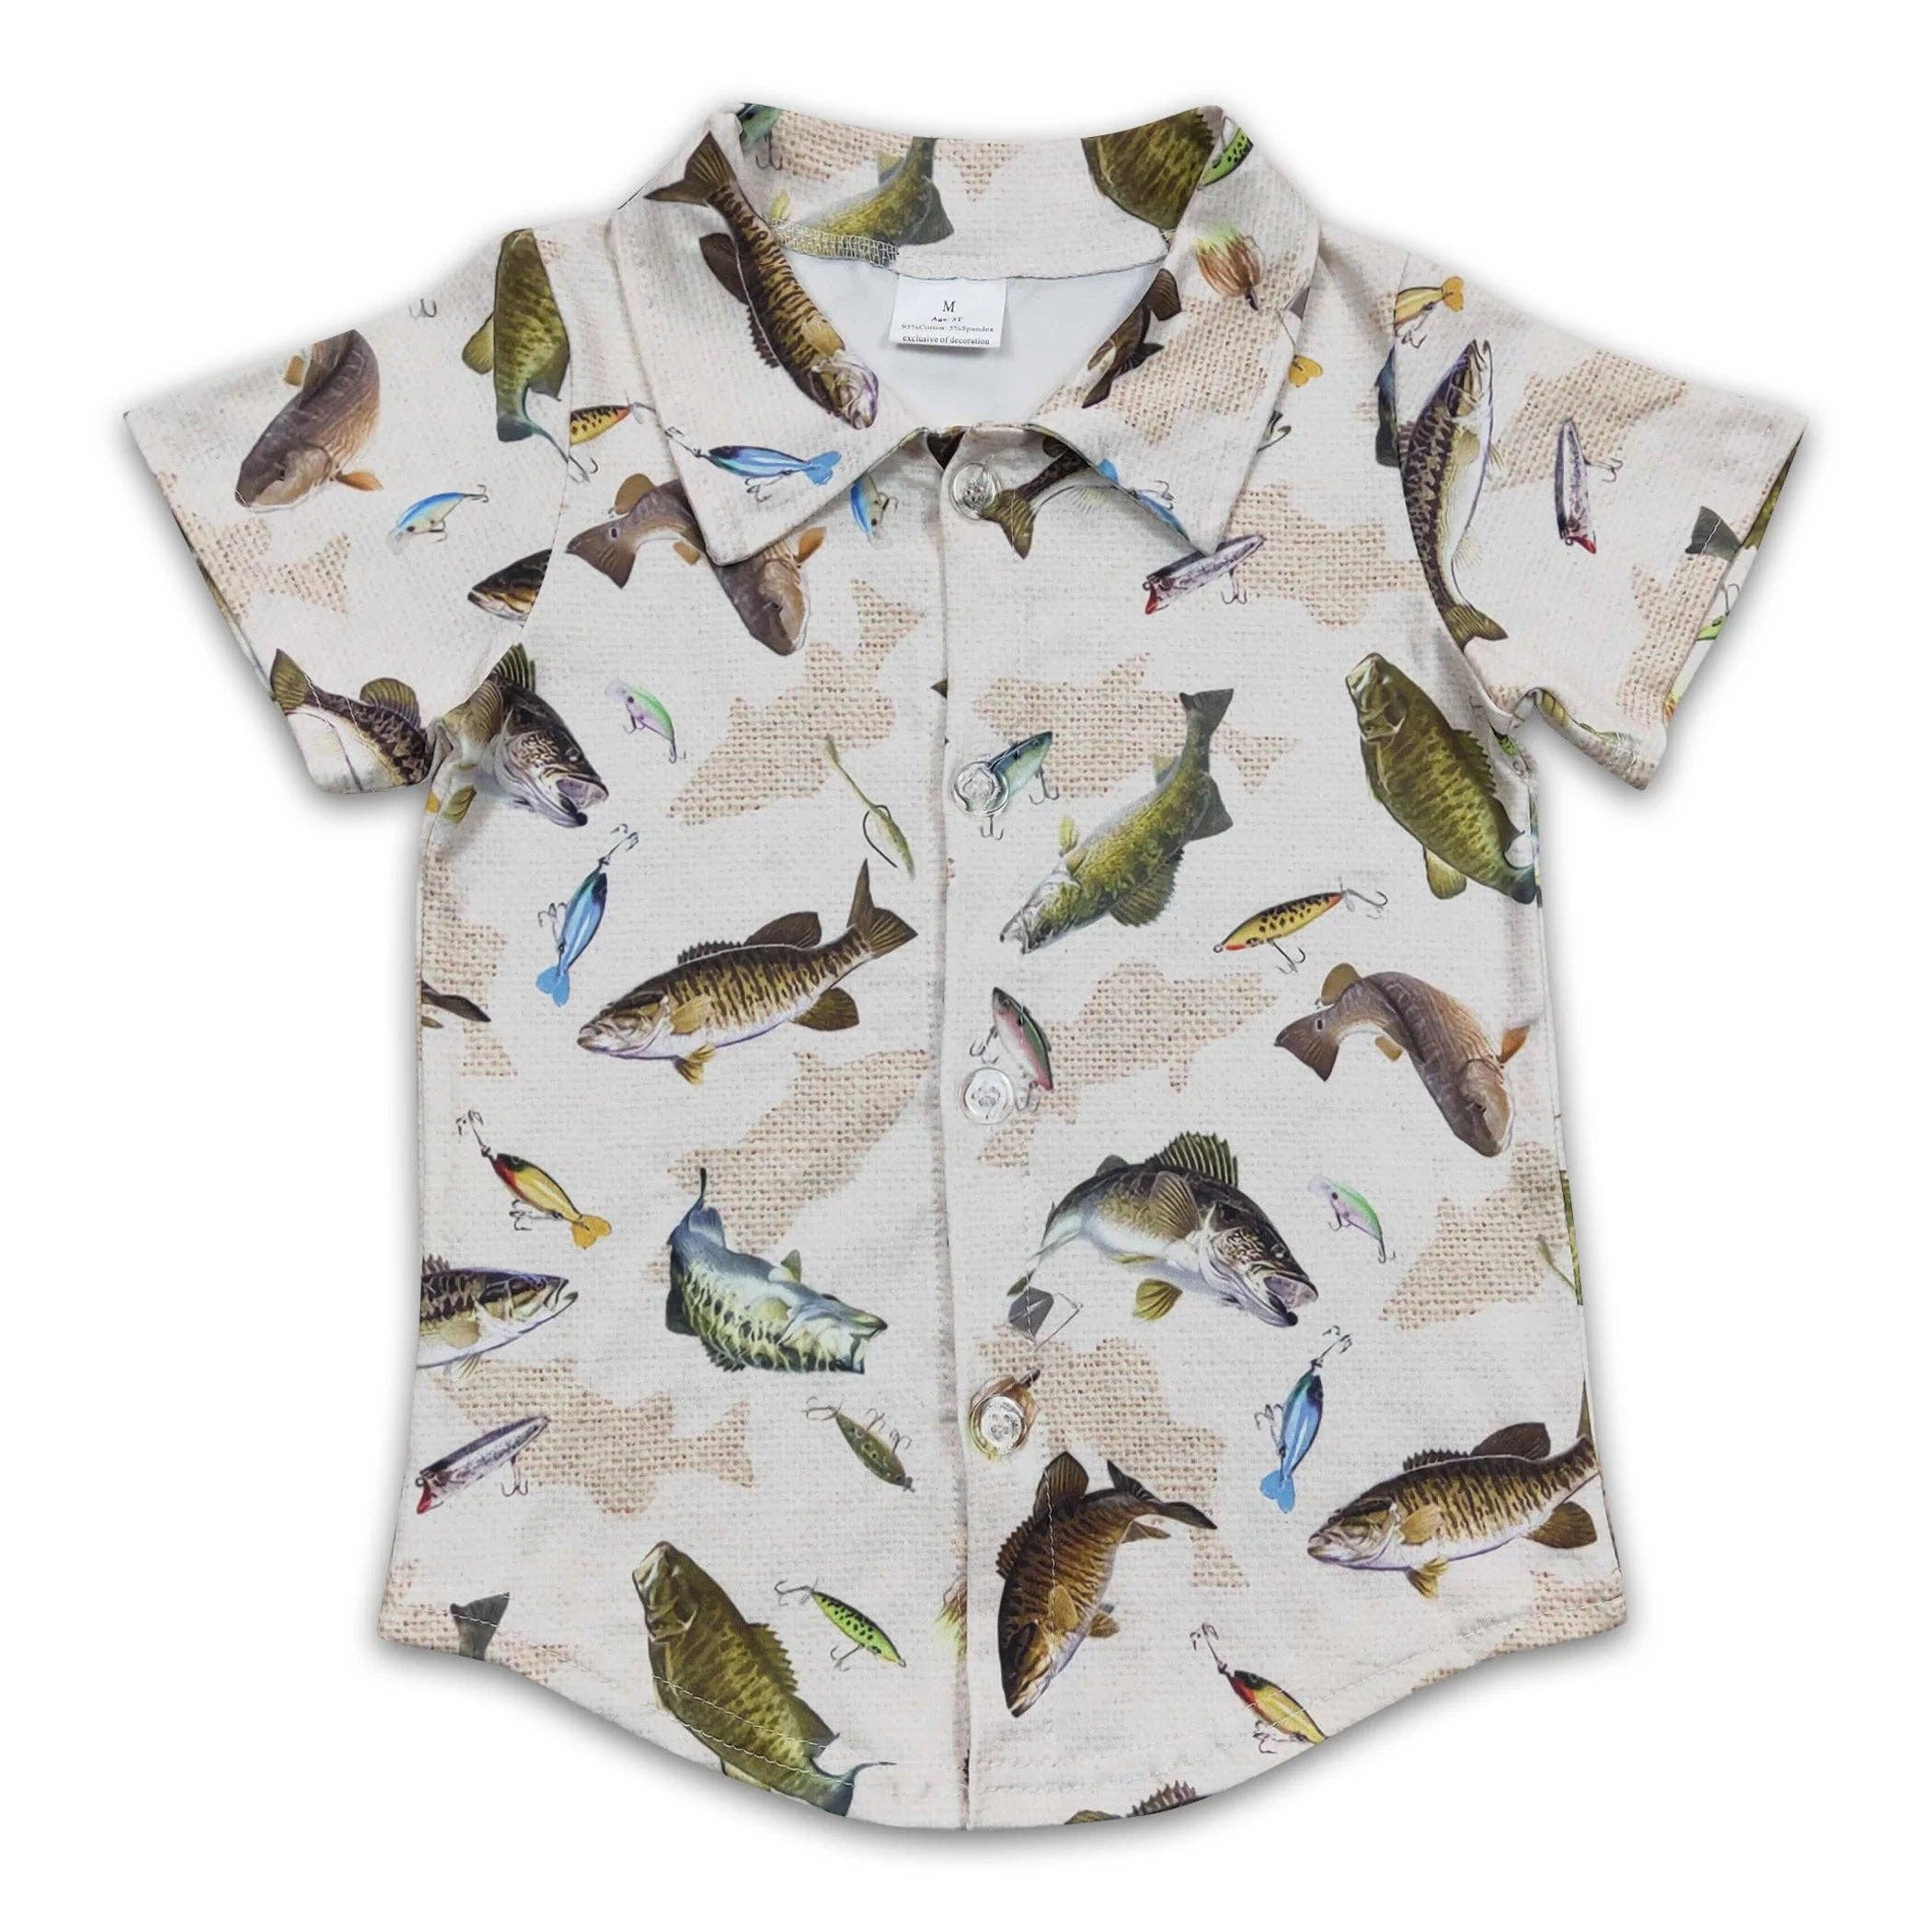 Fish short sleeves kids boy button up shirt – BuckskinBeaux